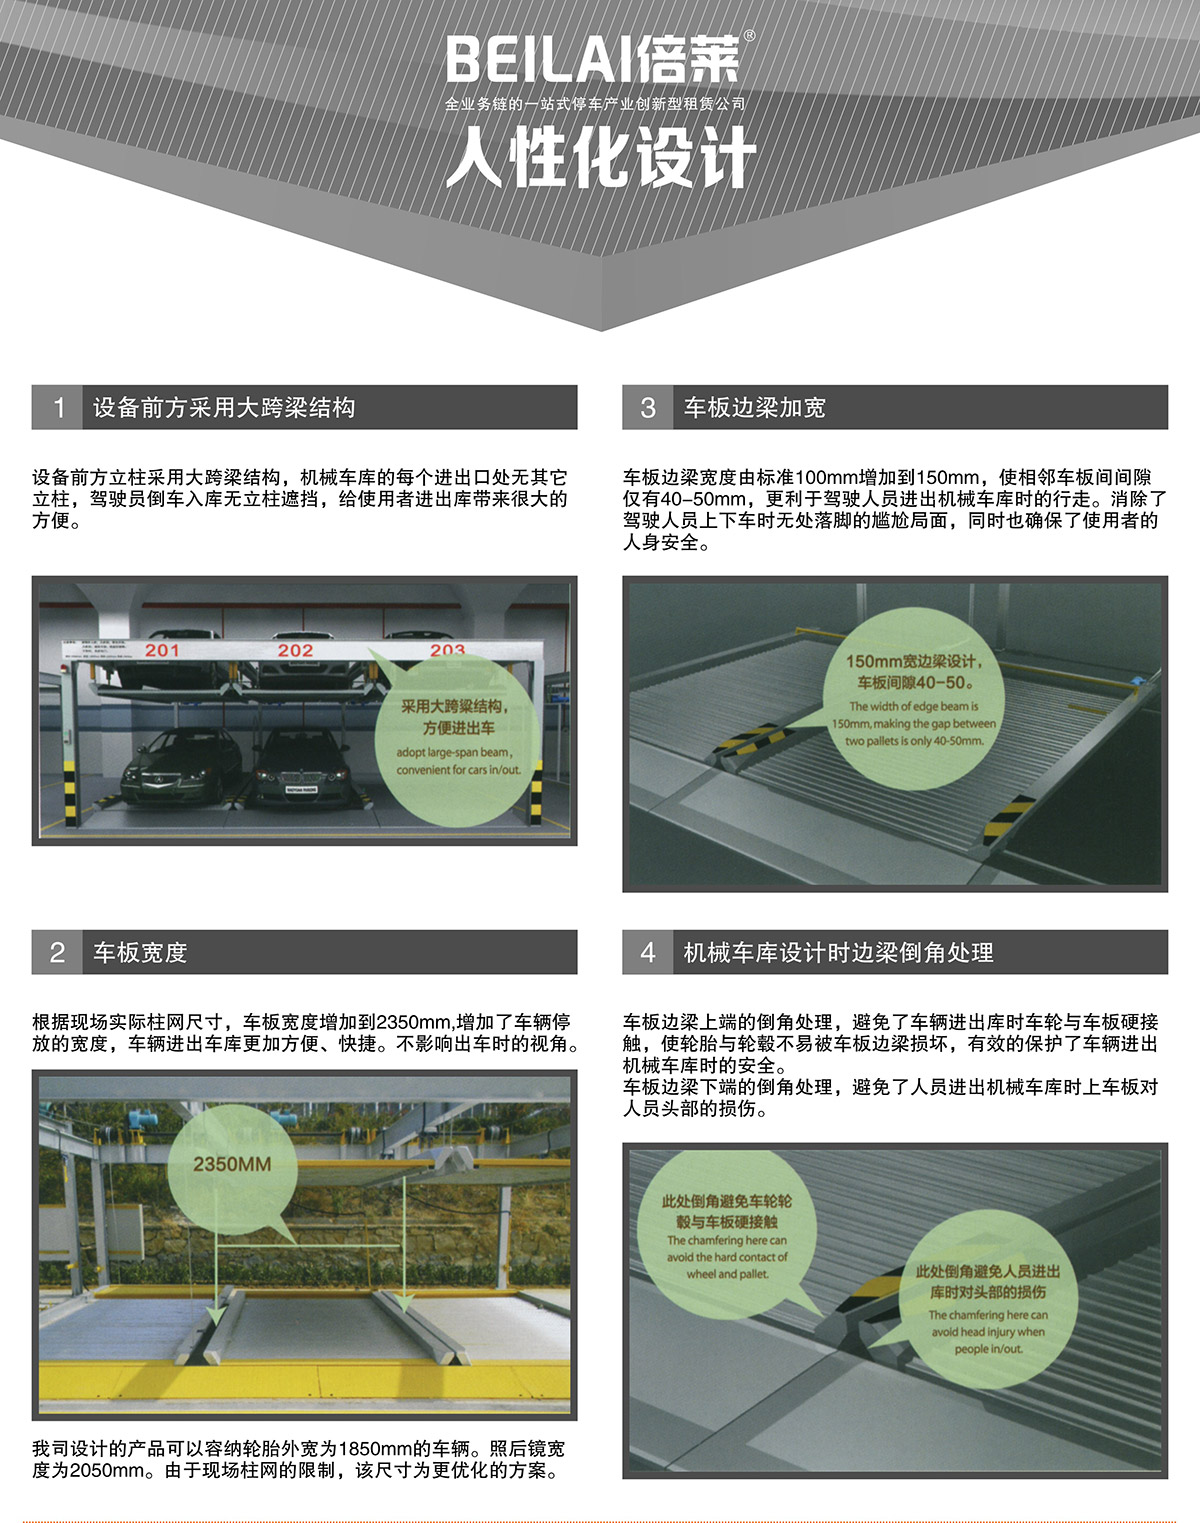 四川单列PSH2二层升降横移立体停车设备人性化设计.jpg